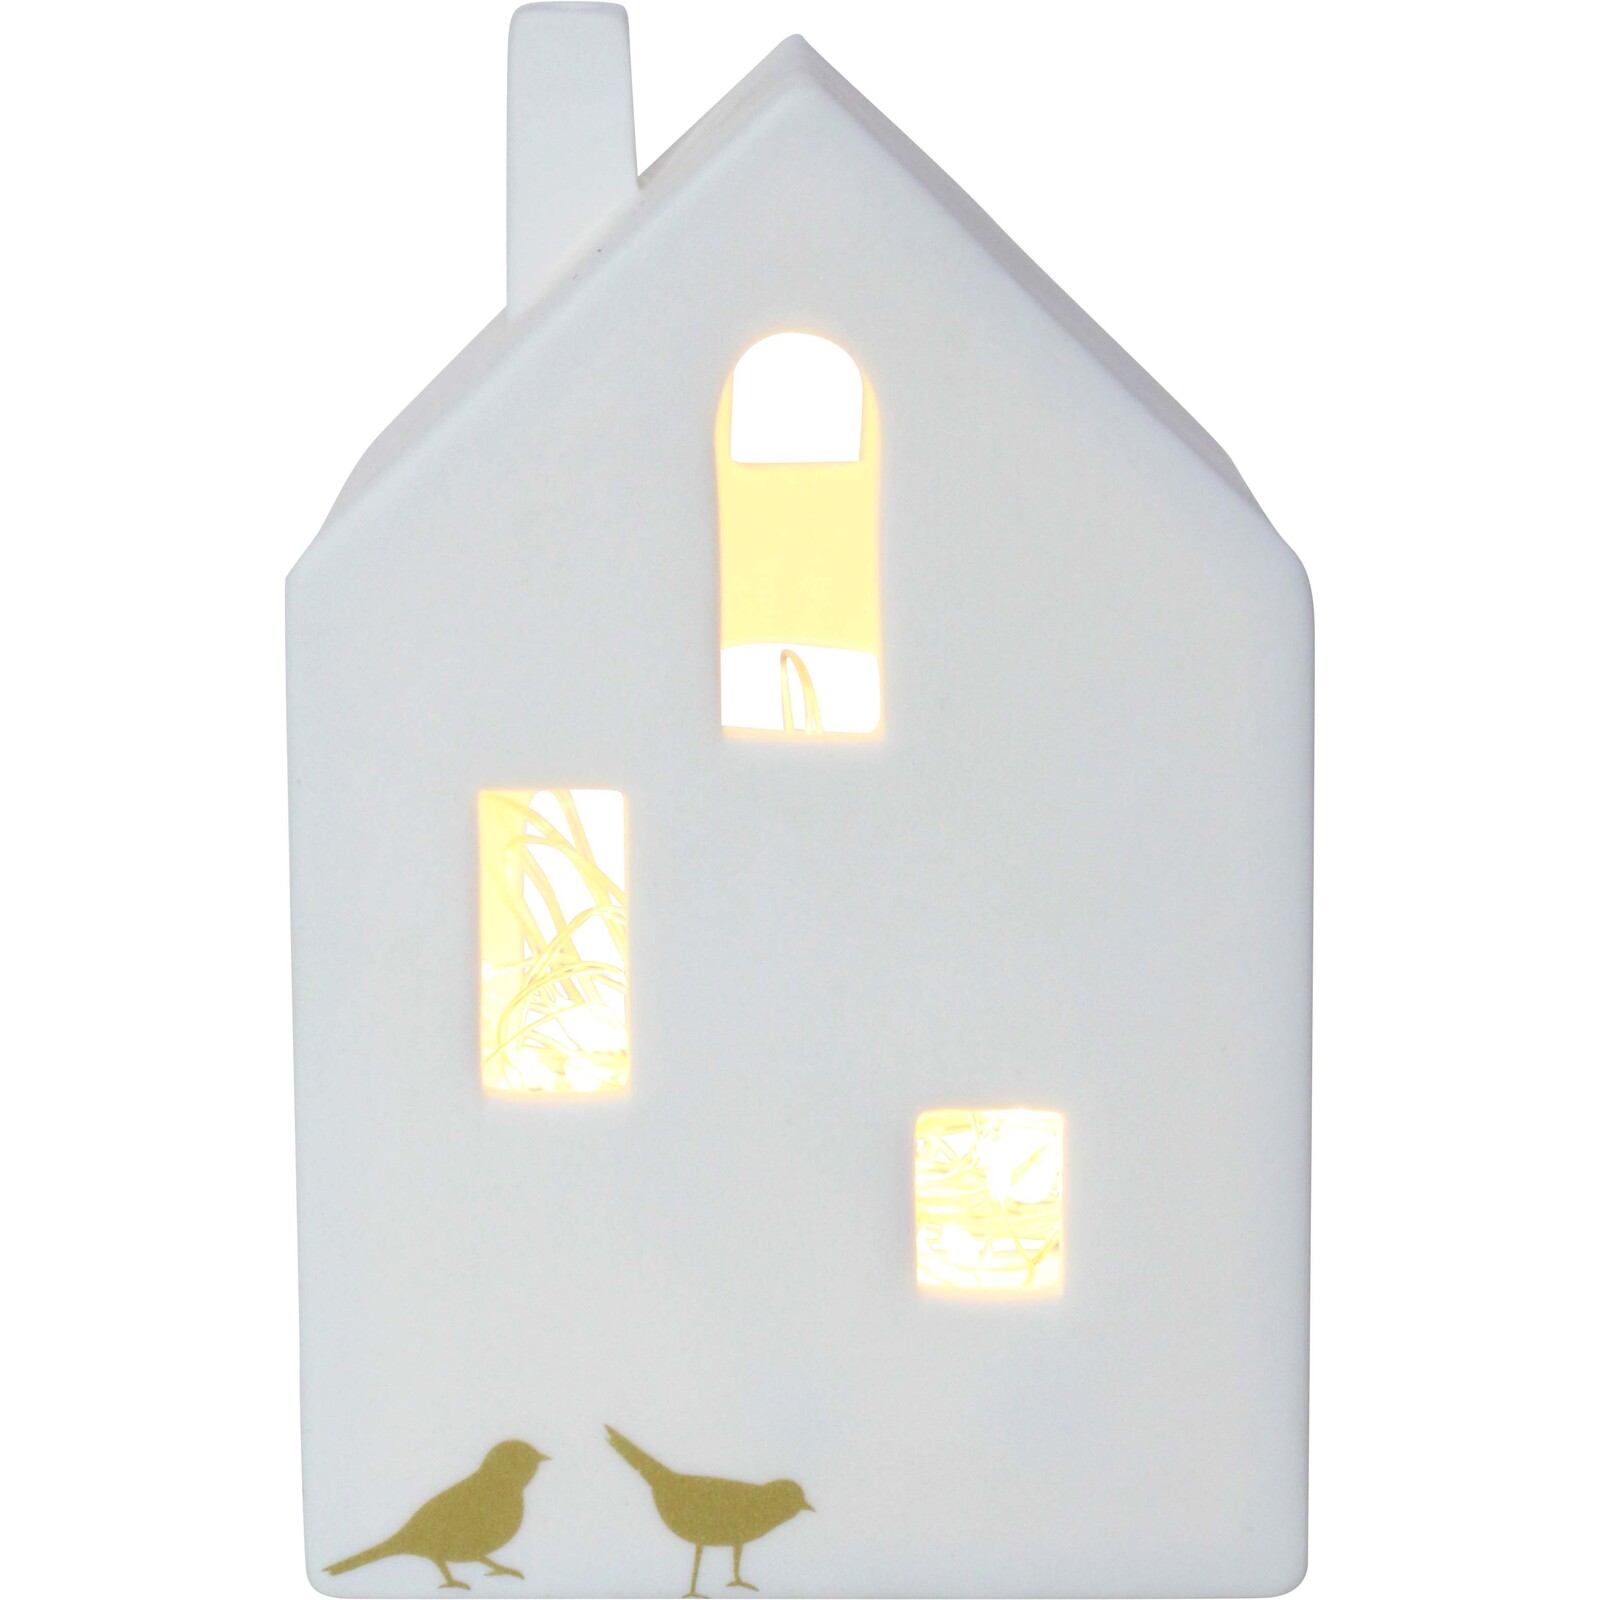 Porcelain Village House Tealight Holder 3D